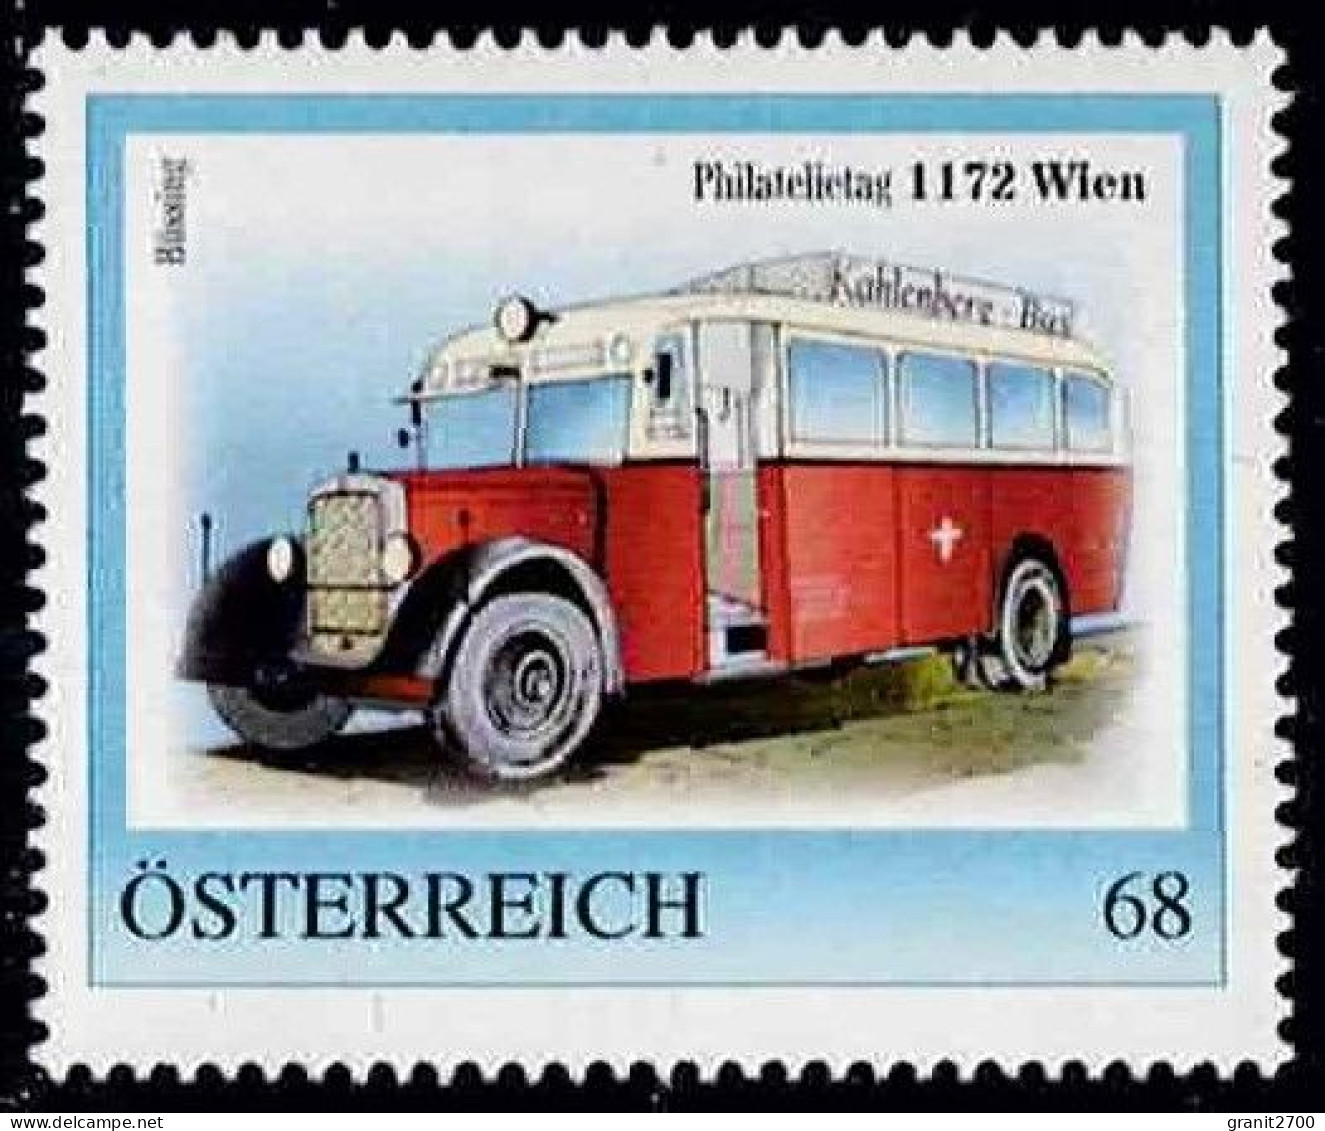 PM  Philatelietag 1172 Wien Ex Bogen Nr.  8122525  Vom 16.5.2017 Postfrisch - Francobolli Personalizzati